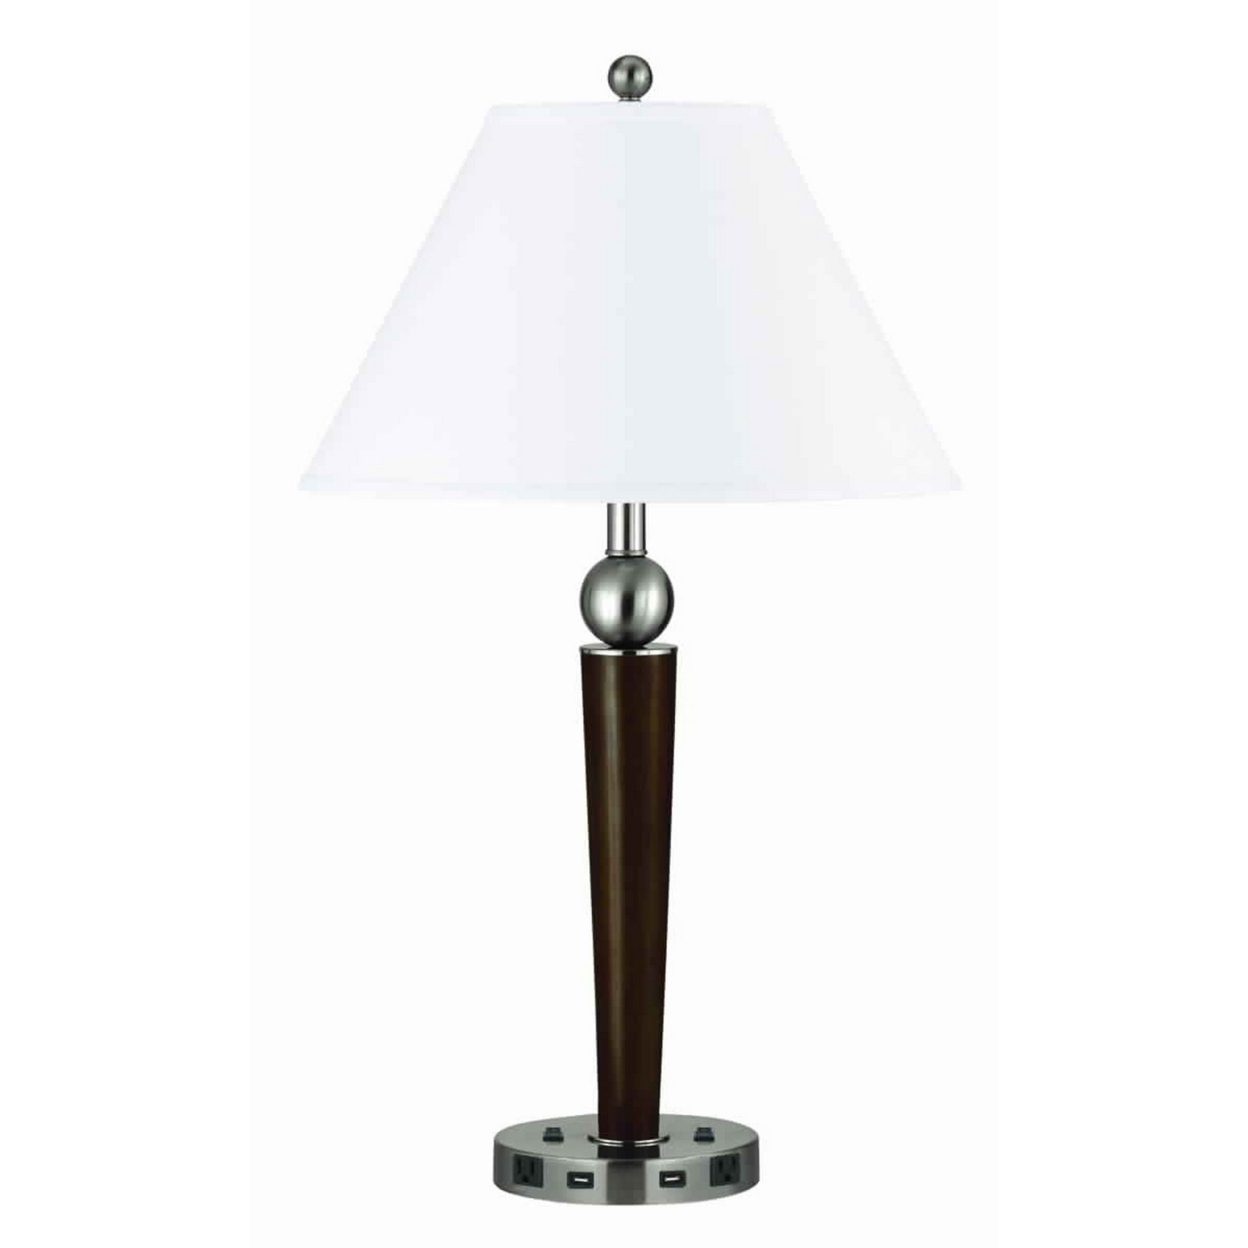 60 X 2 Watt Metal Frame Night Stand Lamp With Fabric Shade, White And Brown- Saltoro Sherpi